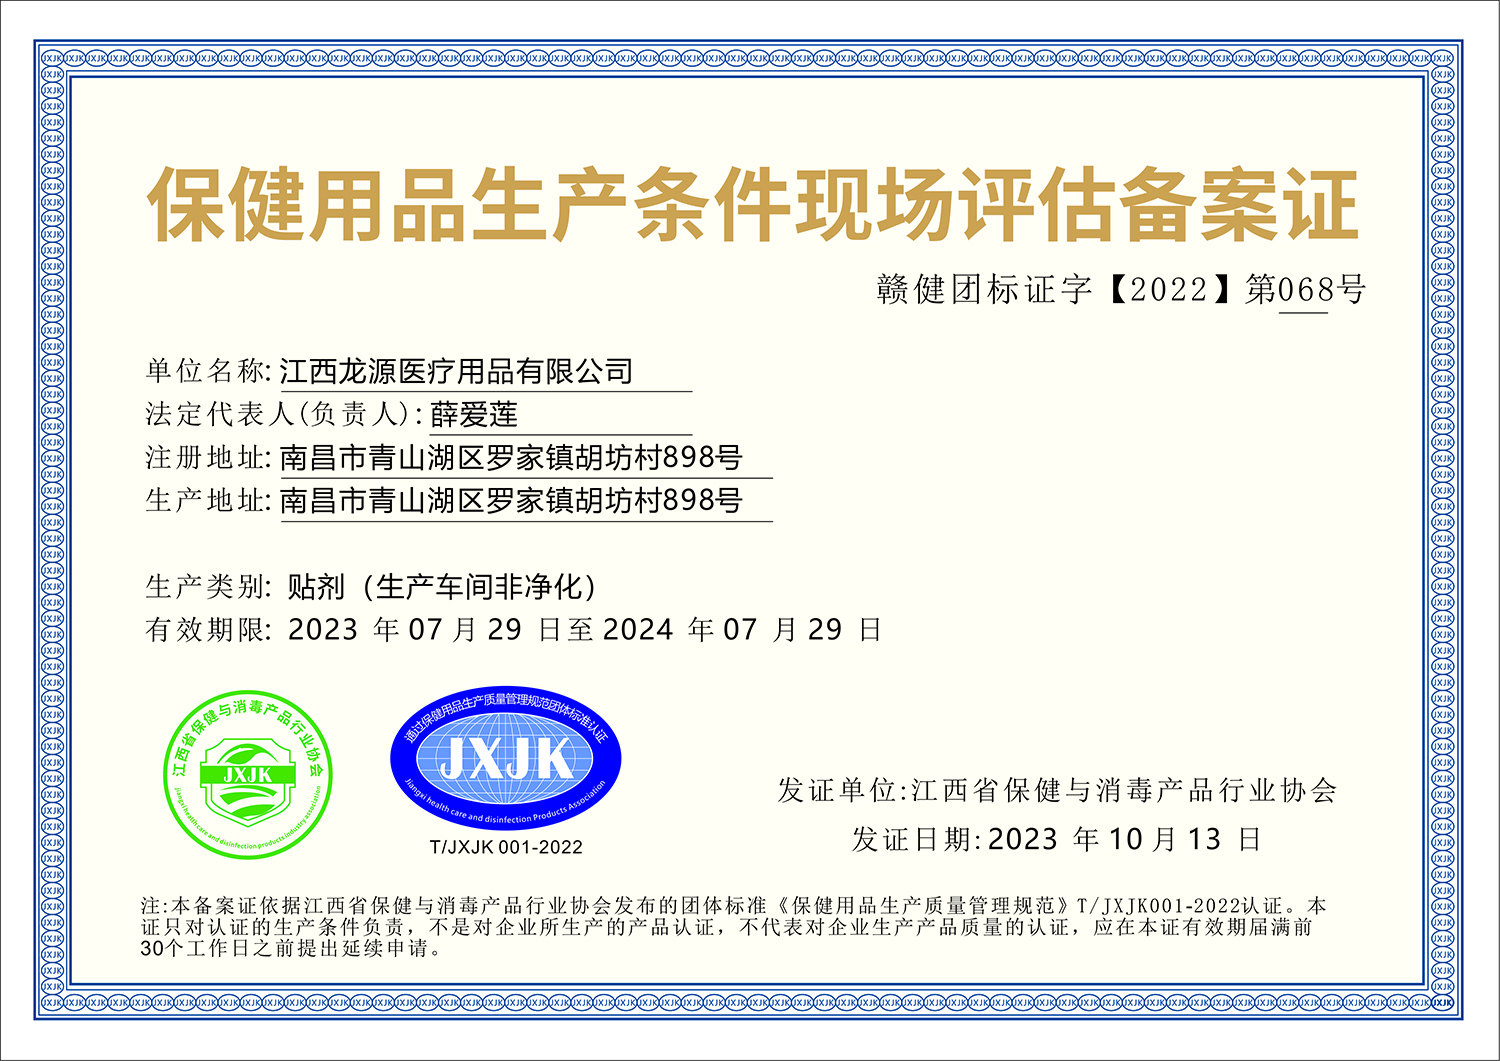 Jiangxi Longyuan Medical Supplies Co., LTD